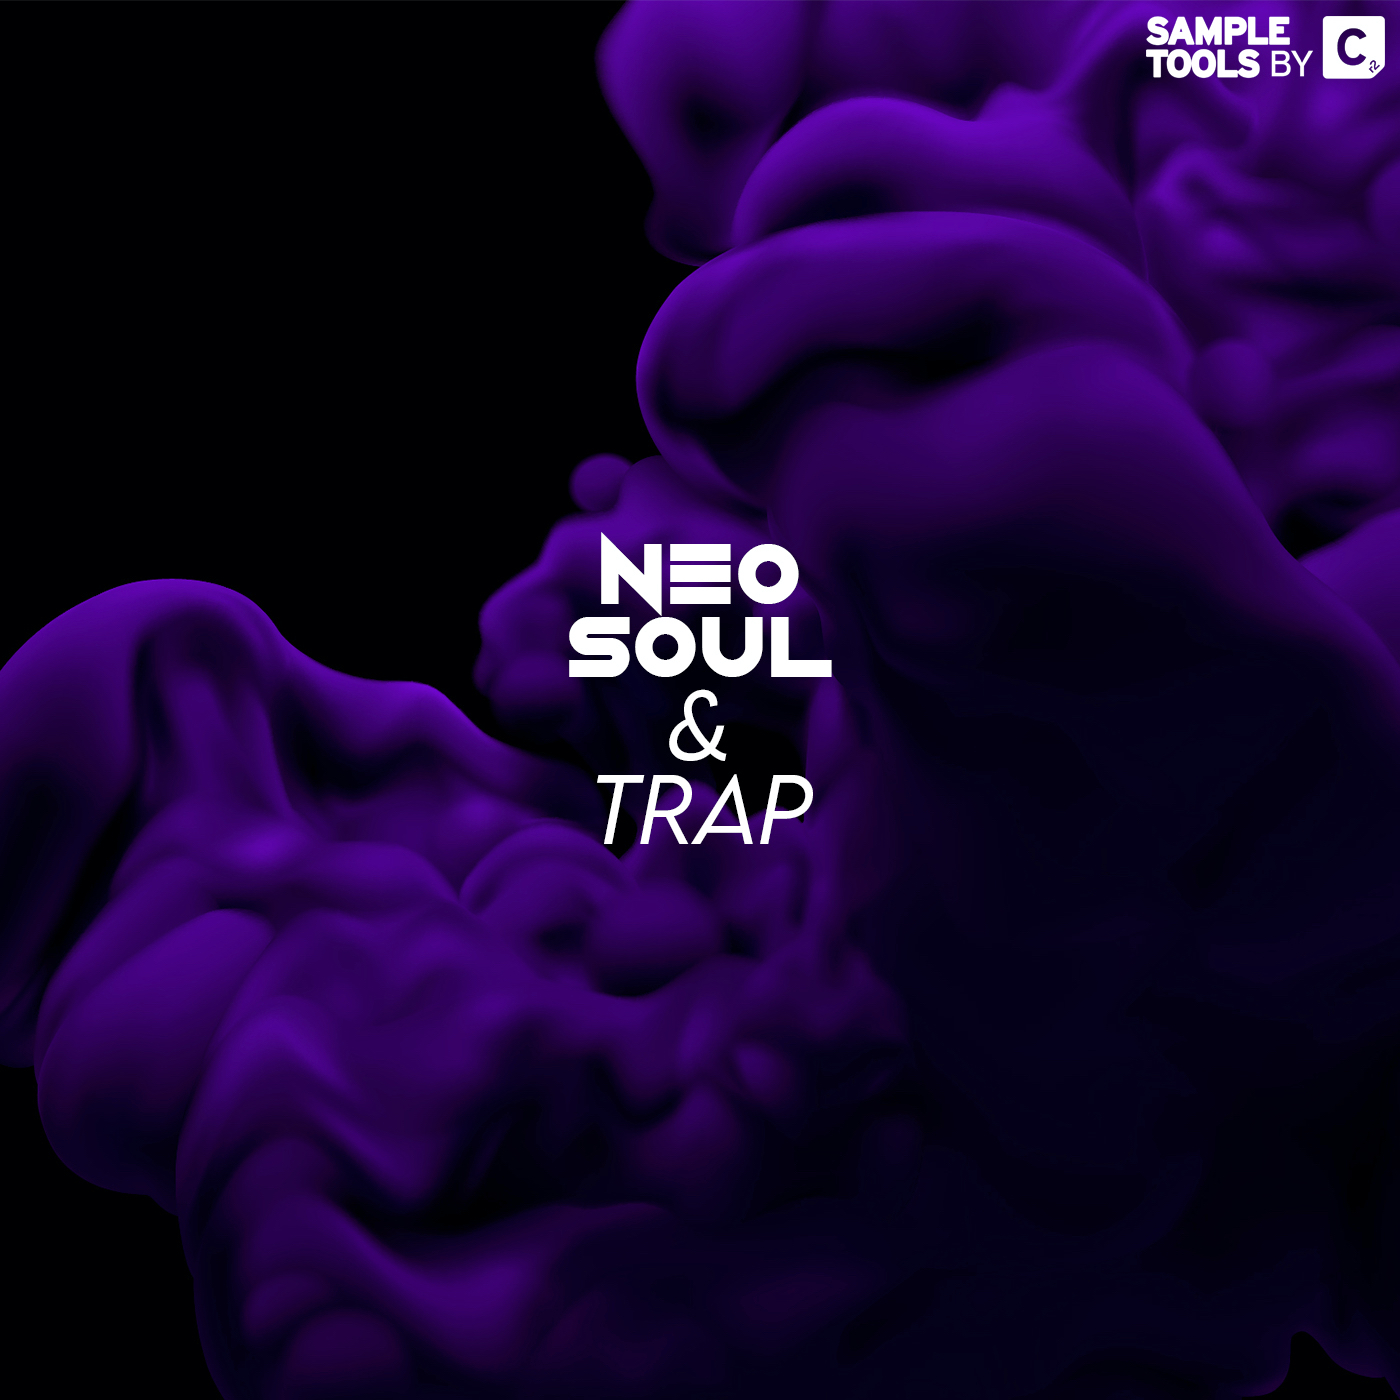 Neo Soul & Trap - artwork